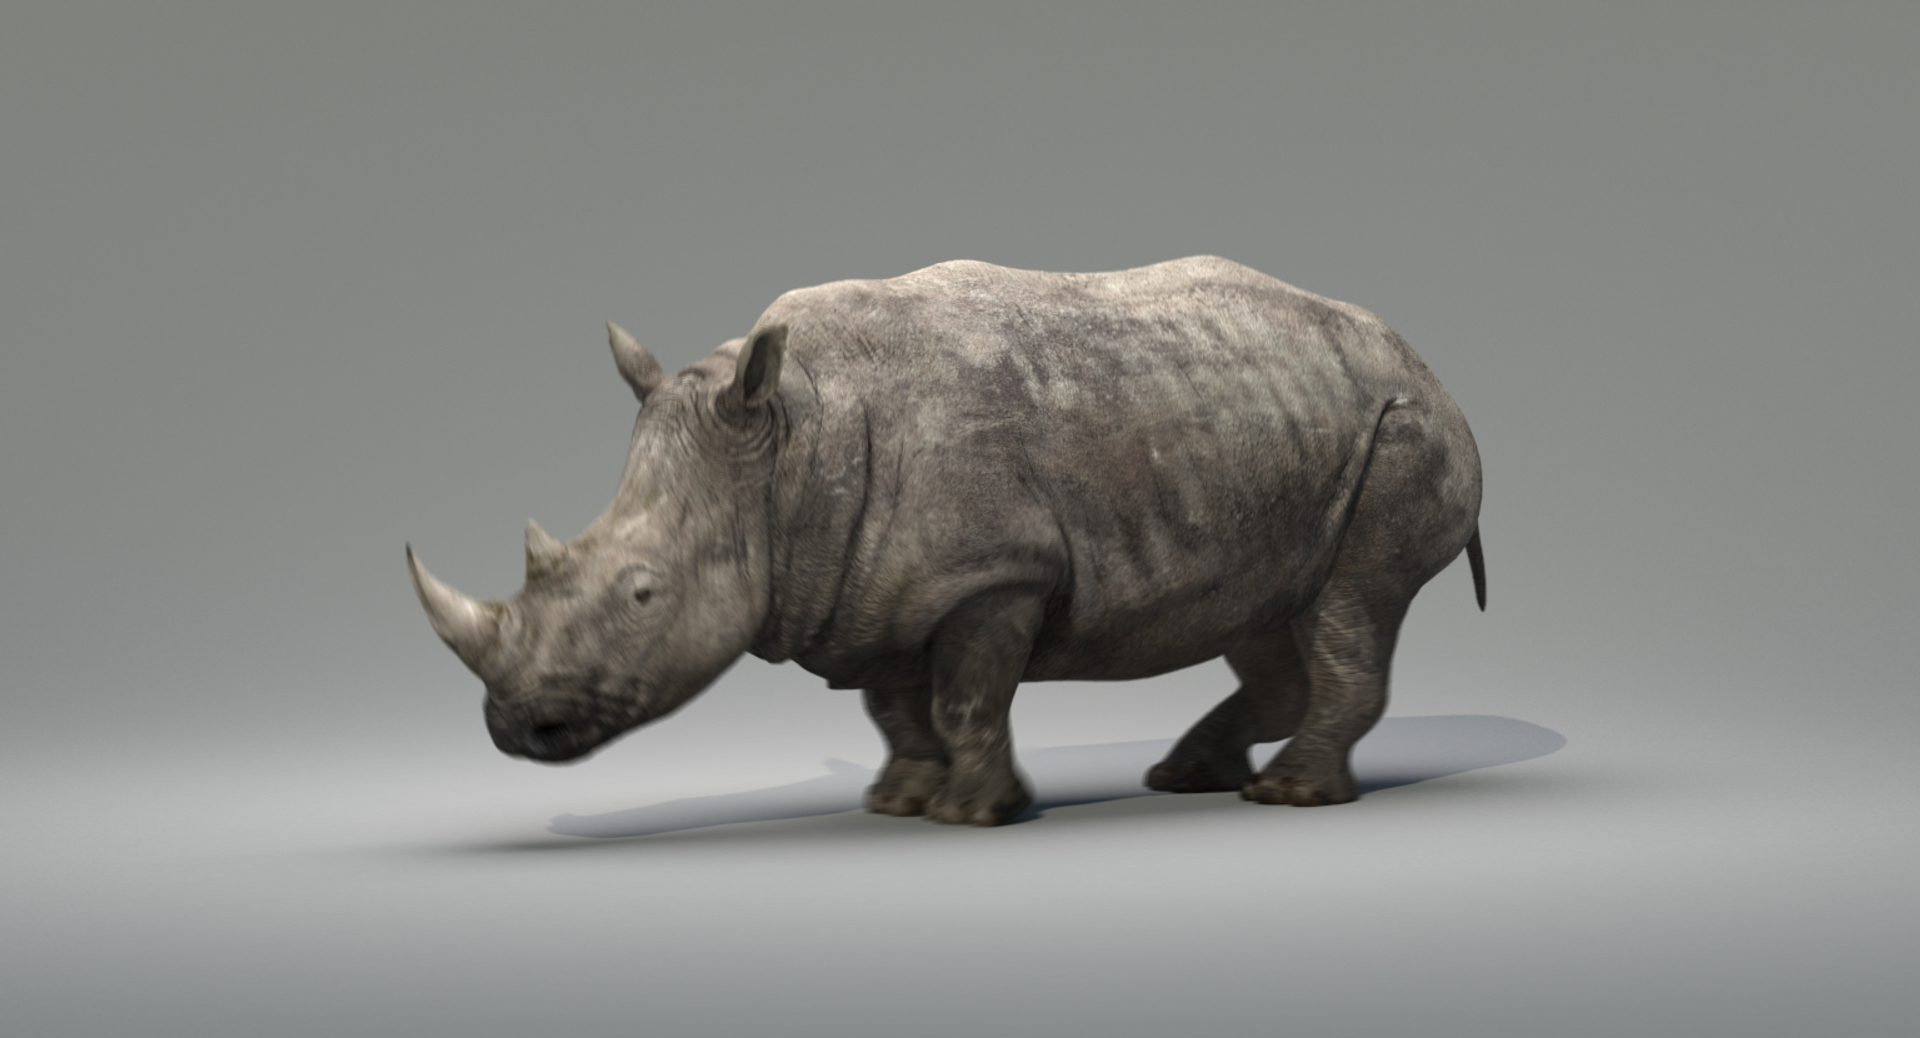 Rhino + V-Ray: Smoothing